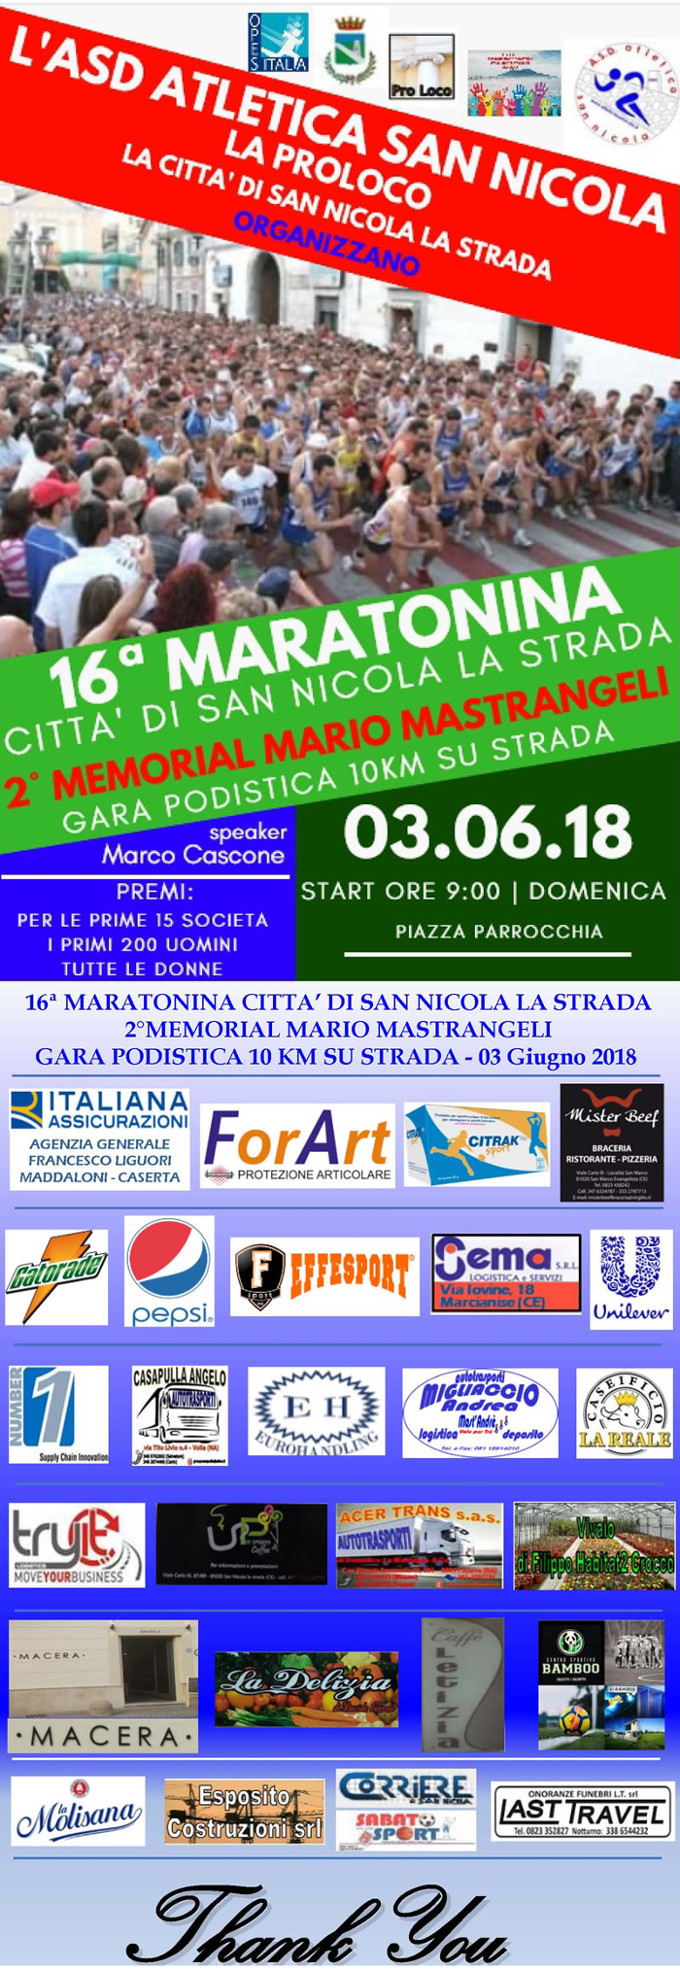 San Nicola La Strada maratonina 2018